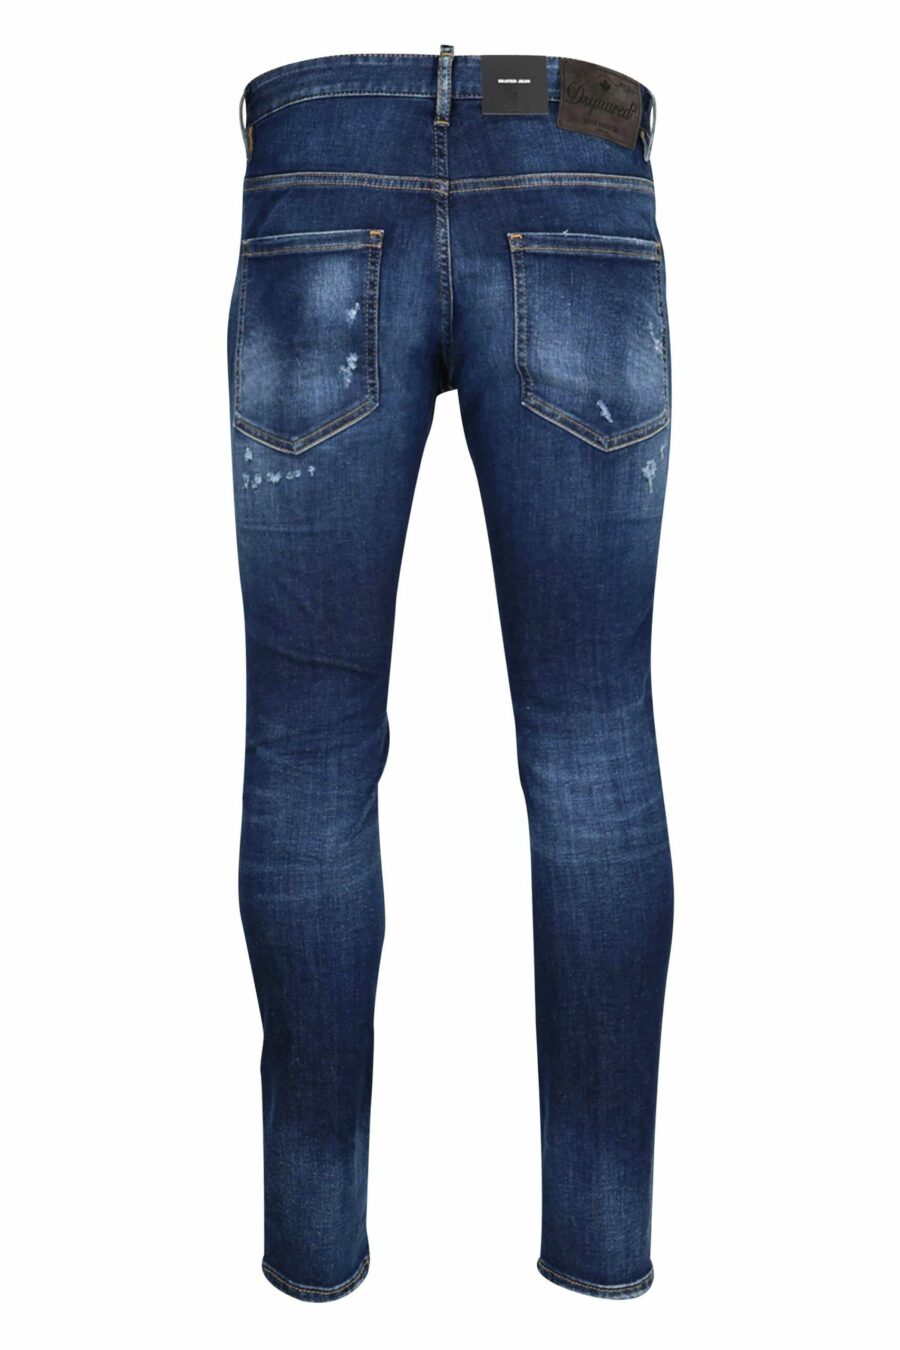 Blaue "Skater-Jeans" mit Rissen - 8054148102548 2 skaliert